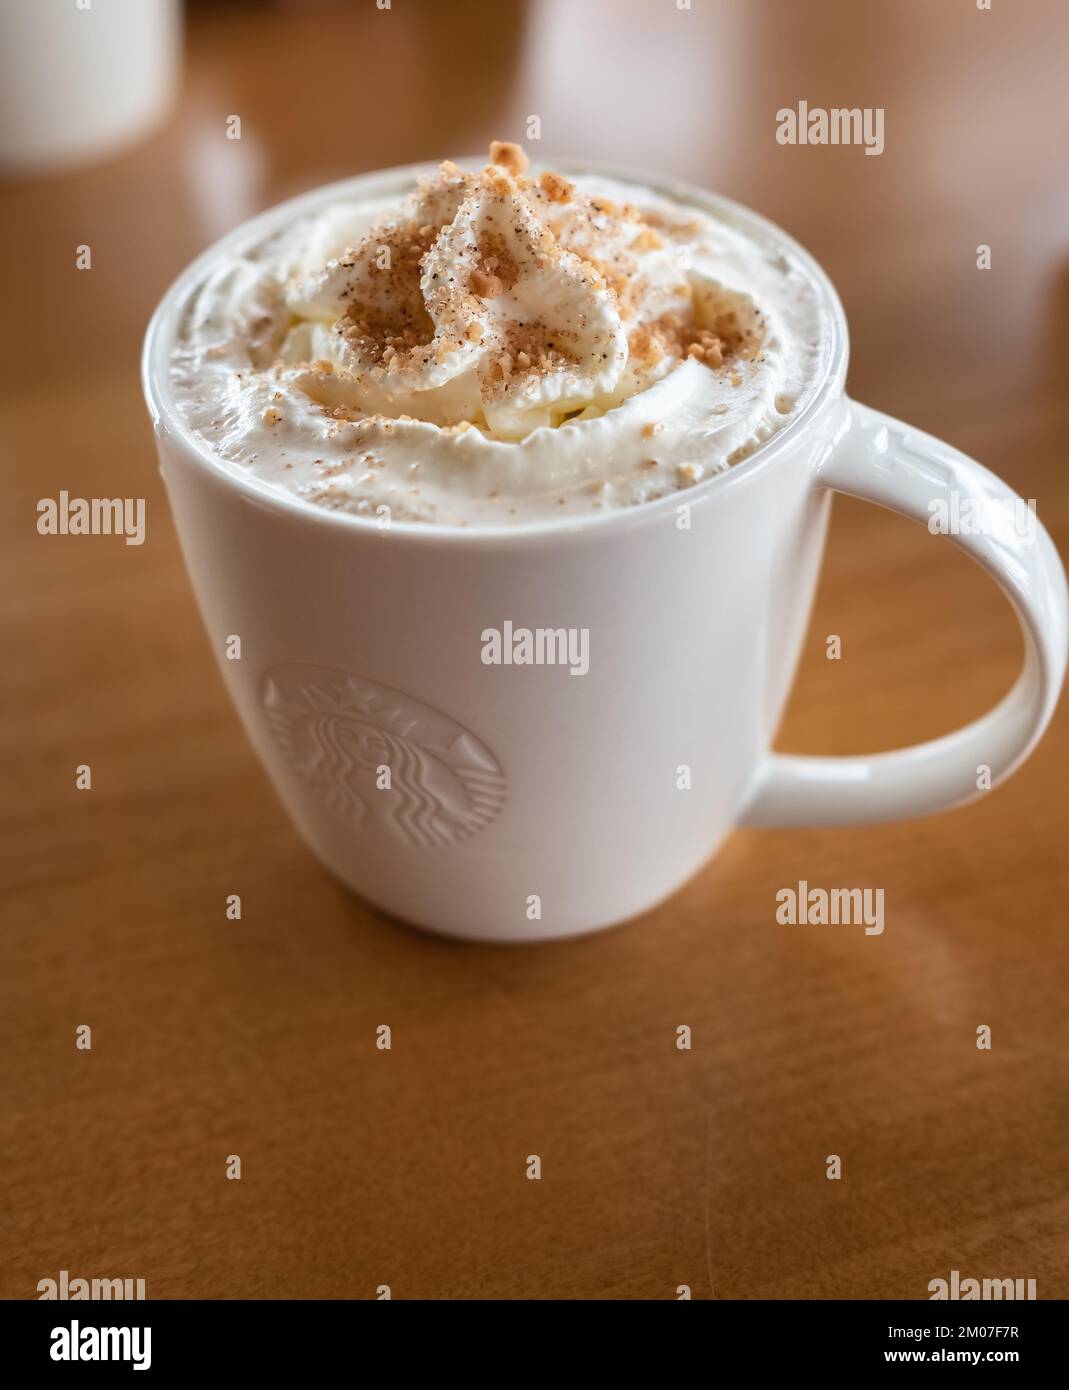 Starbucks Kaffee Karamell Latte weiße Tasse im Starbucks Cafe. Starbucks ist das größte Kaffeehausunternehmen der Welt – Vancouver, BC, Kanada – Dezember 2,2 Stockfoto